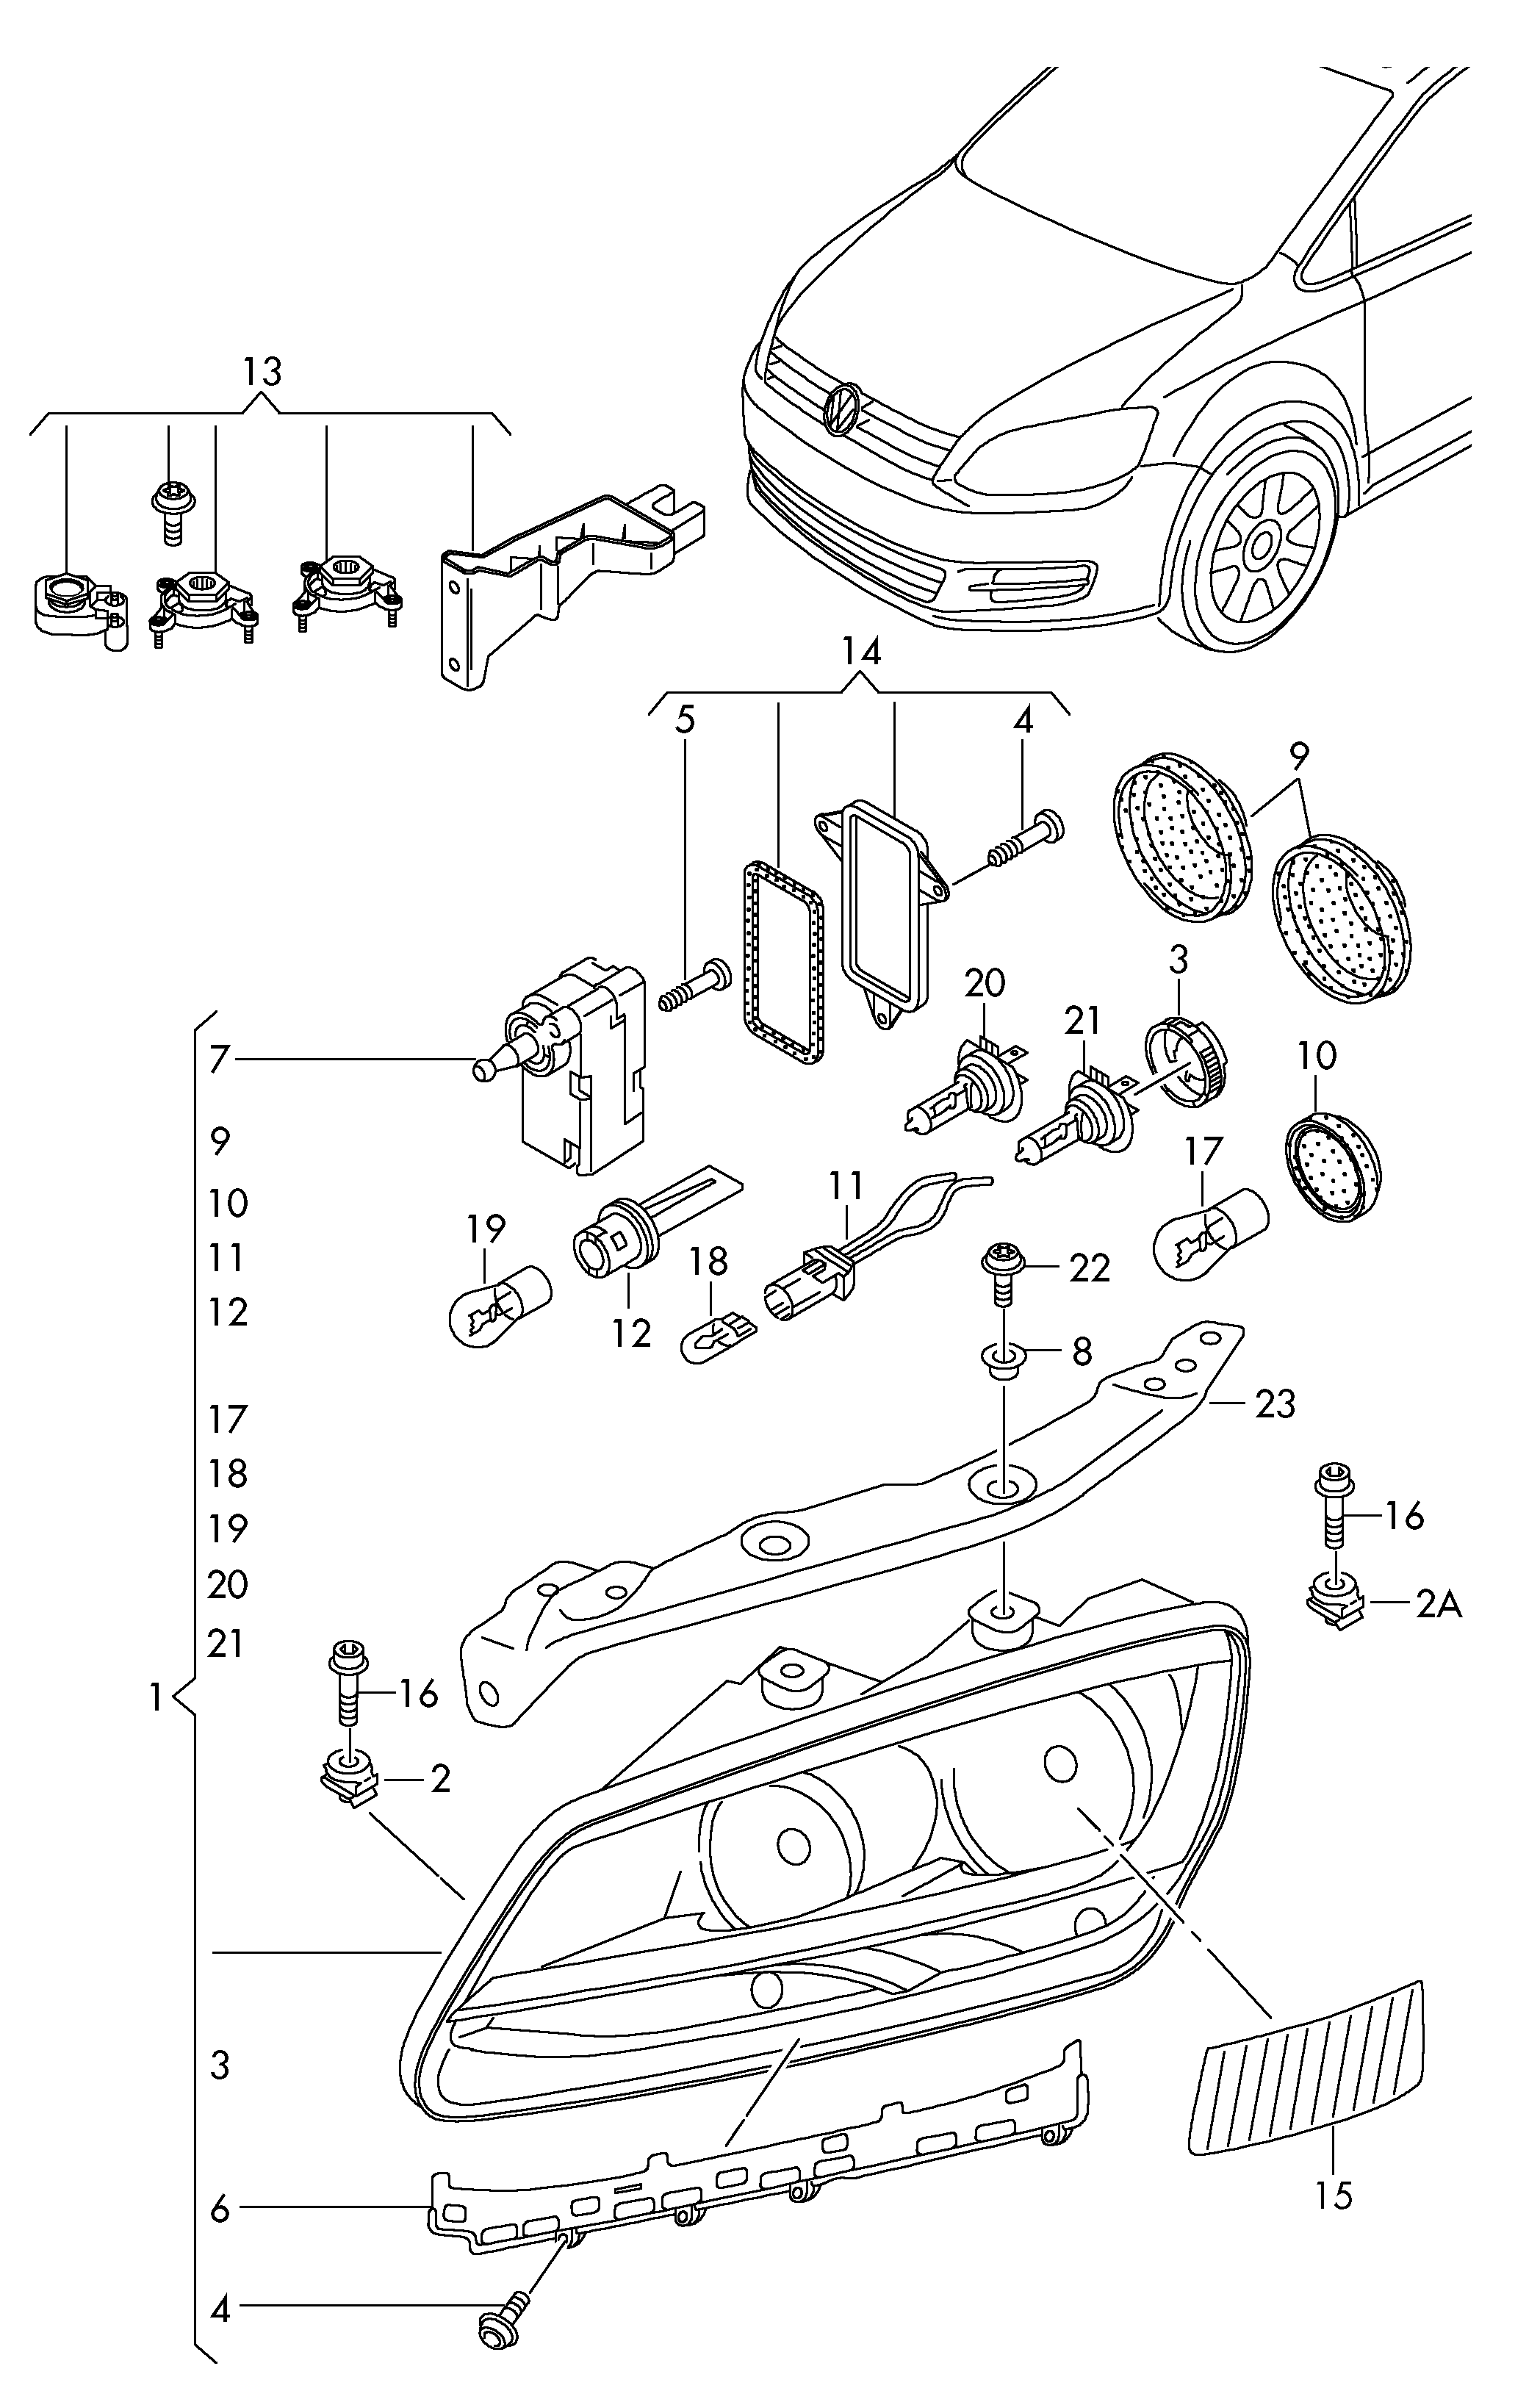 doppio proiettore alogeno - Alhambra(AL)  